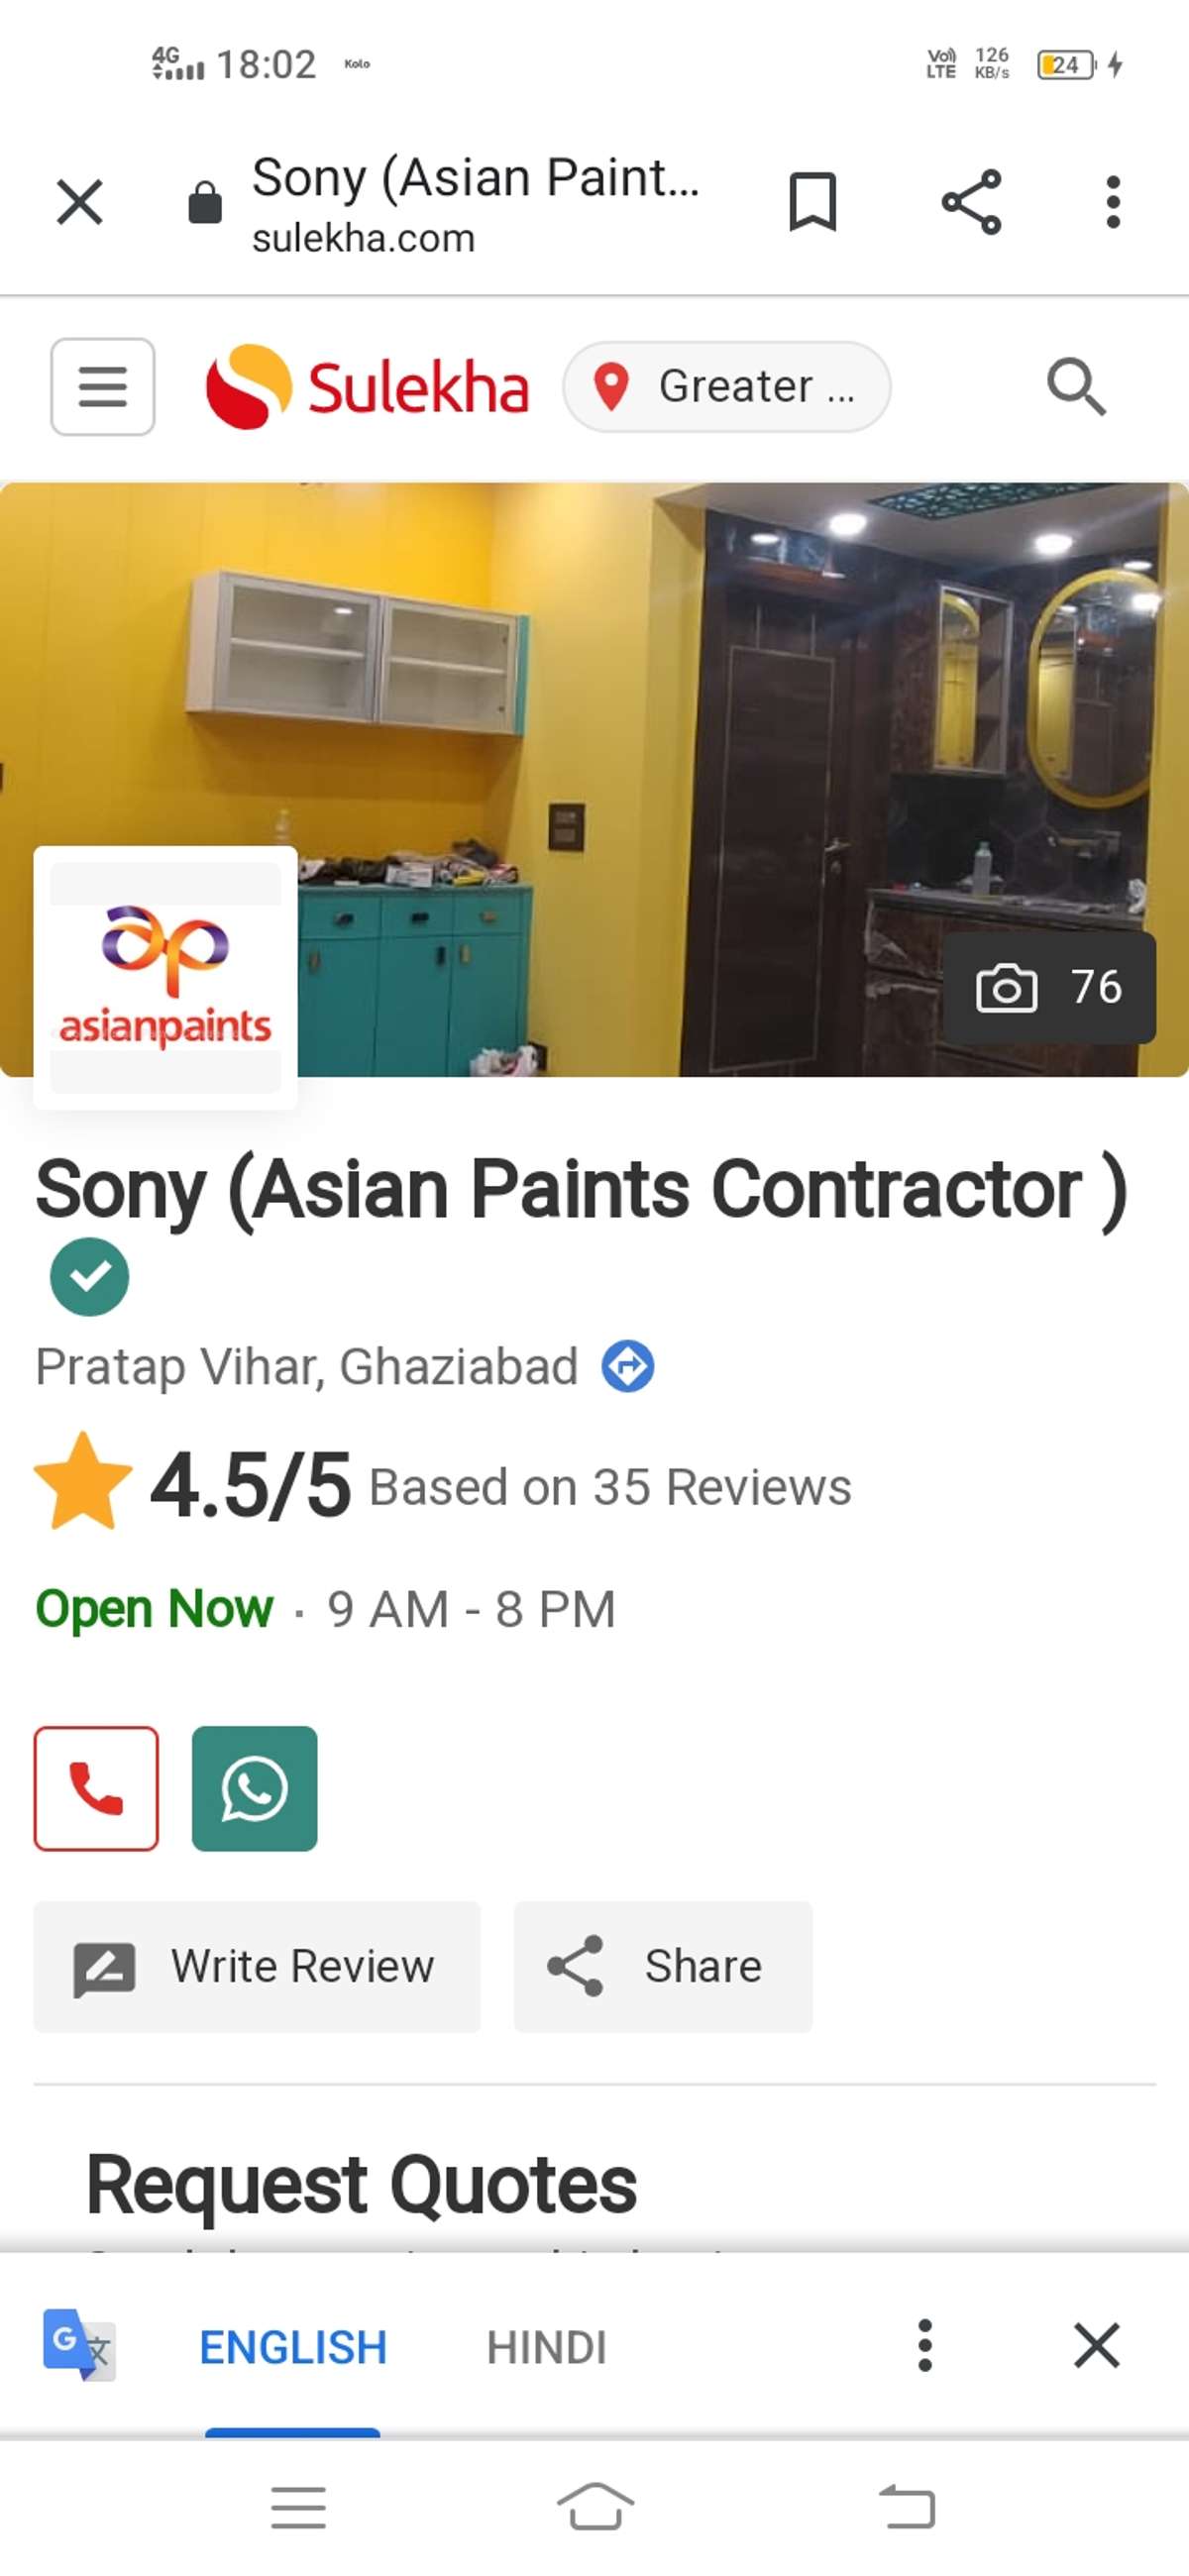 Sony painting contractor
sar agar koi painting ka kam ho to aap ek bar hamen bhi seva ka mauka den